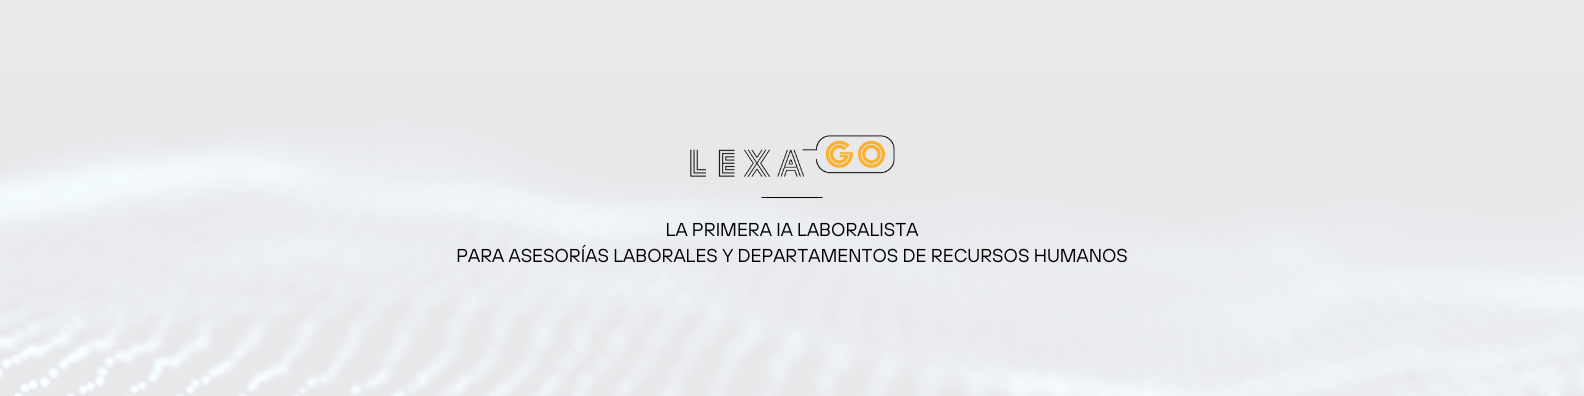 https://static.comunicae.com/photos/notas/1254532/lexa-go-in-ia-laboralista-empresas-asesorias-1-1.png